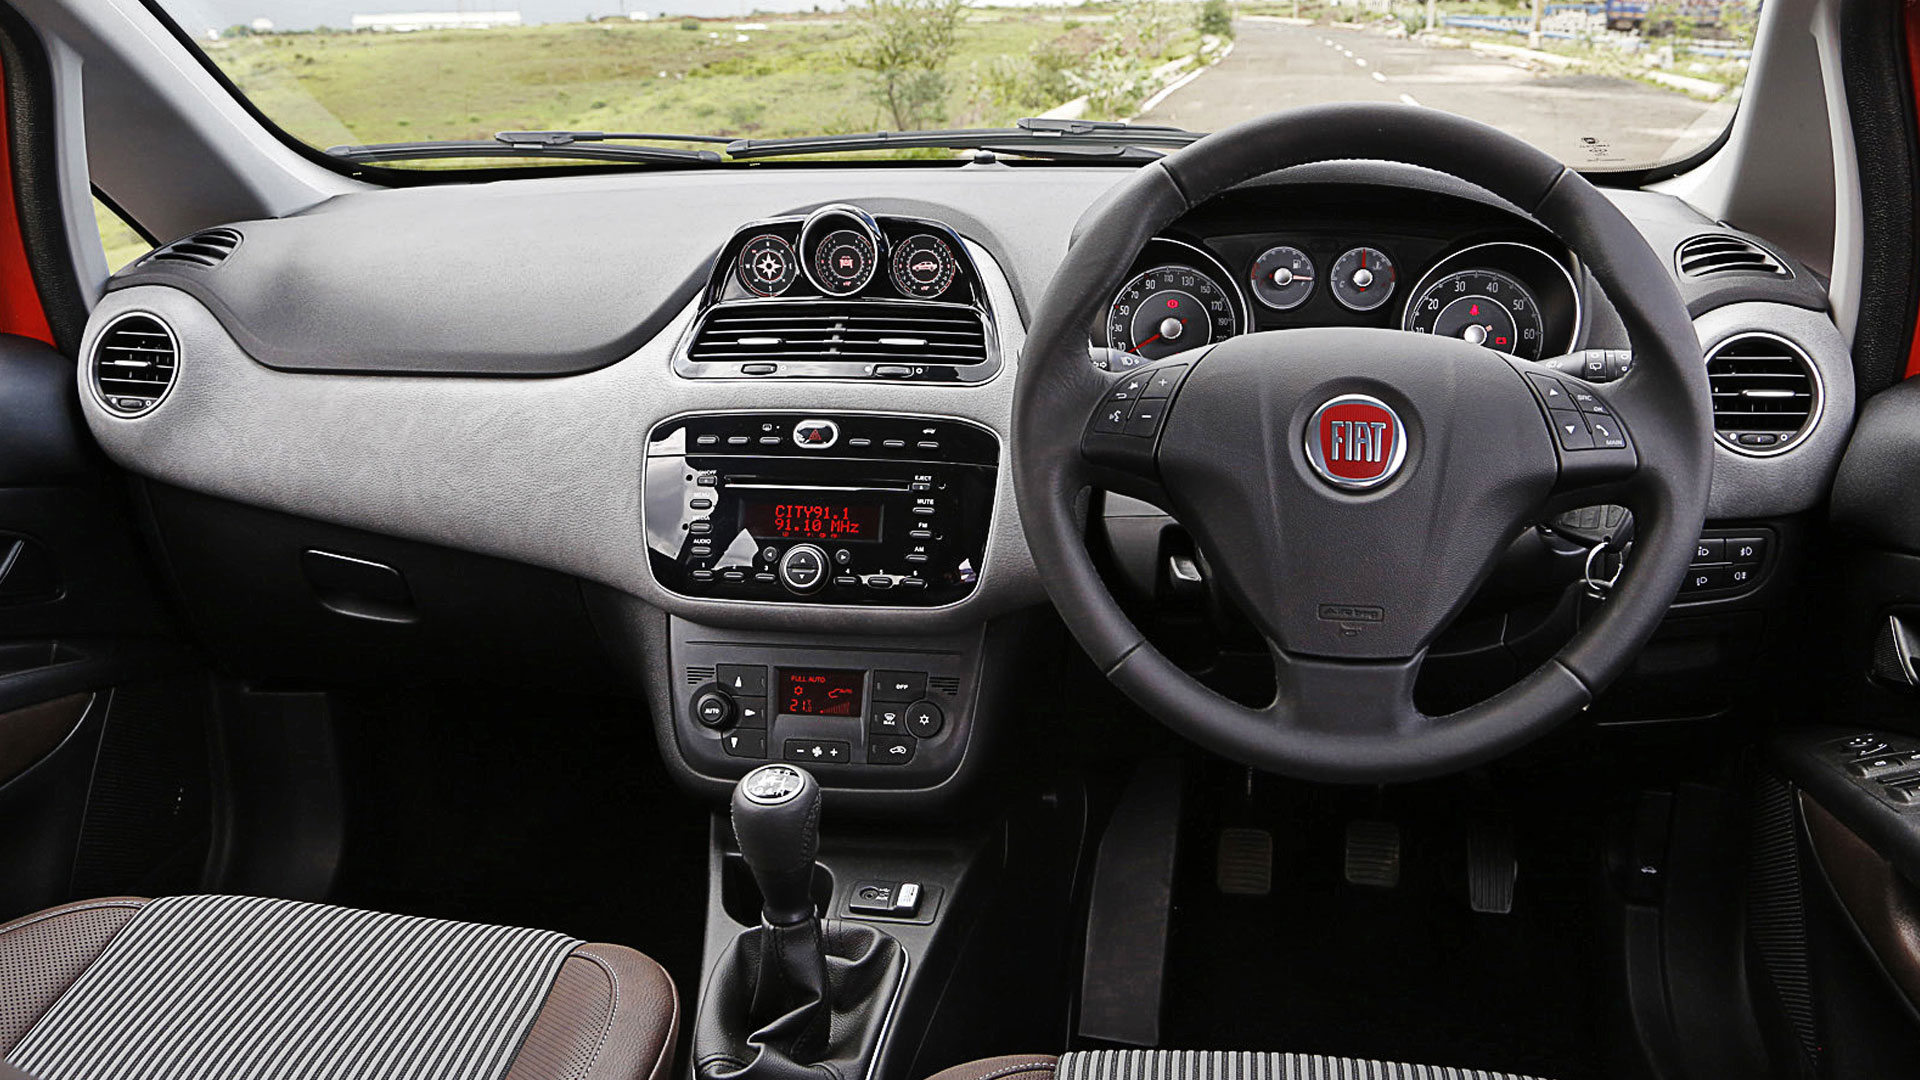 Fiat-avventura-2014 Compare